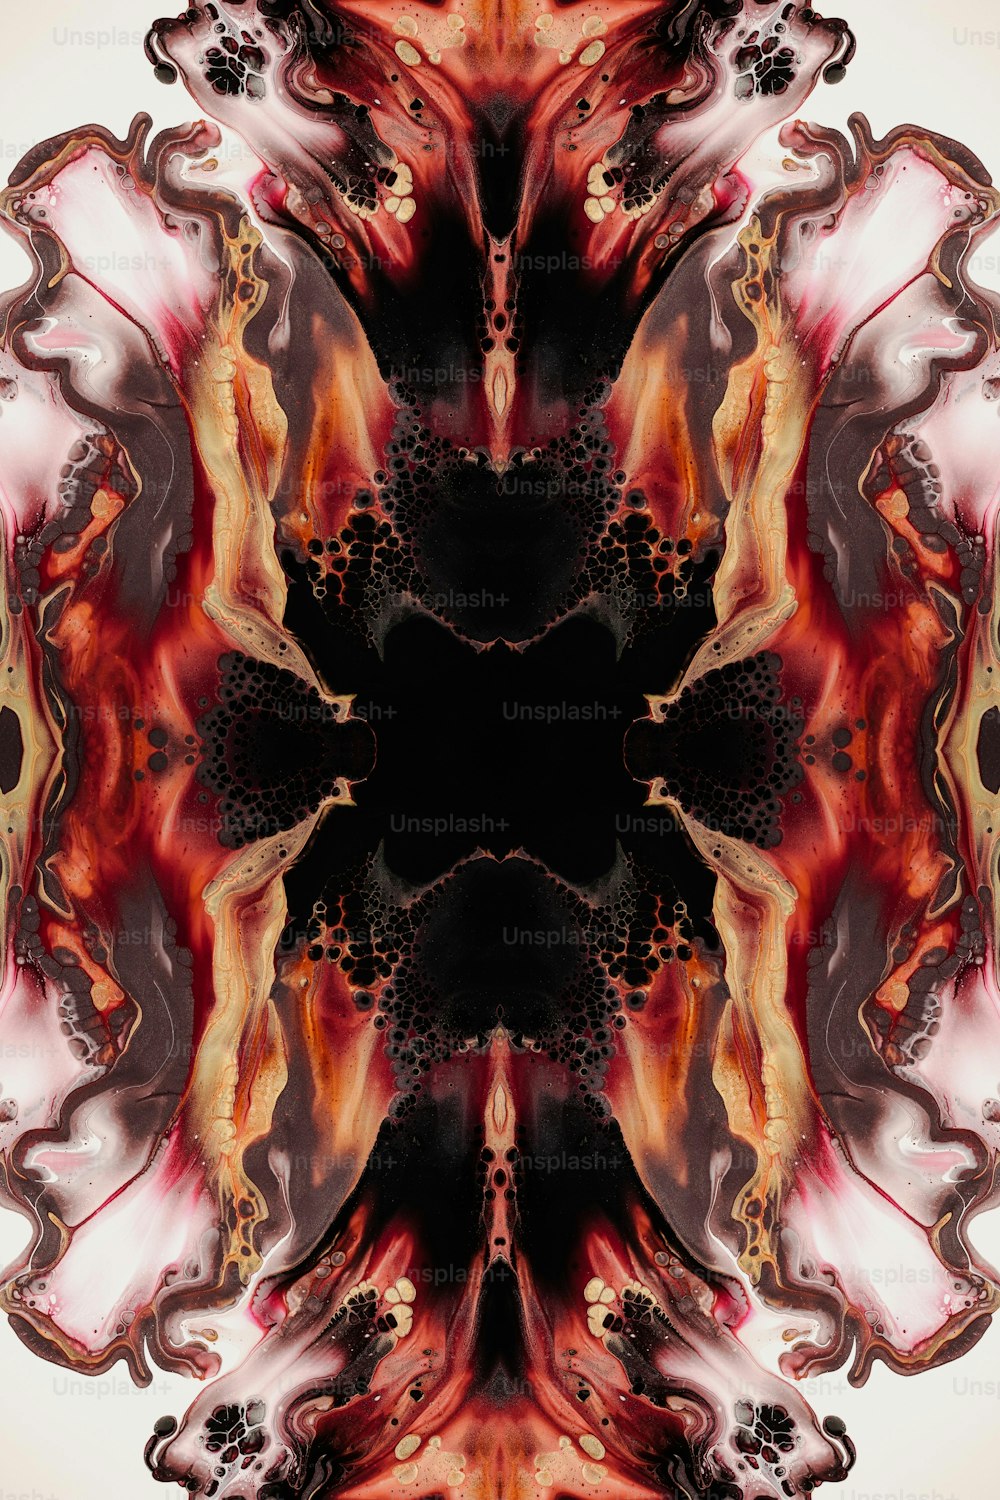 Une image abstraite d’une fleur rouge et noire